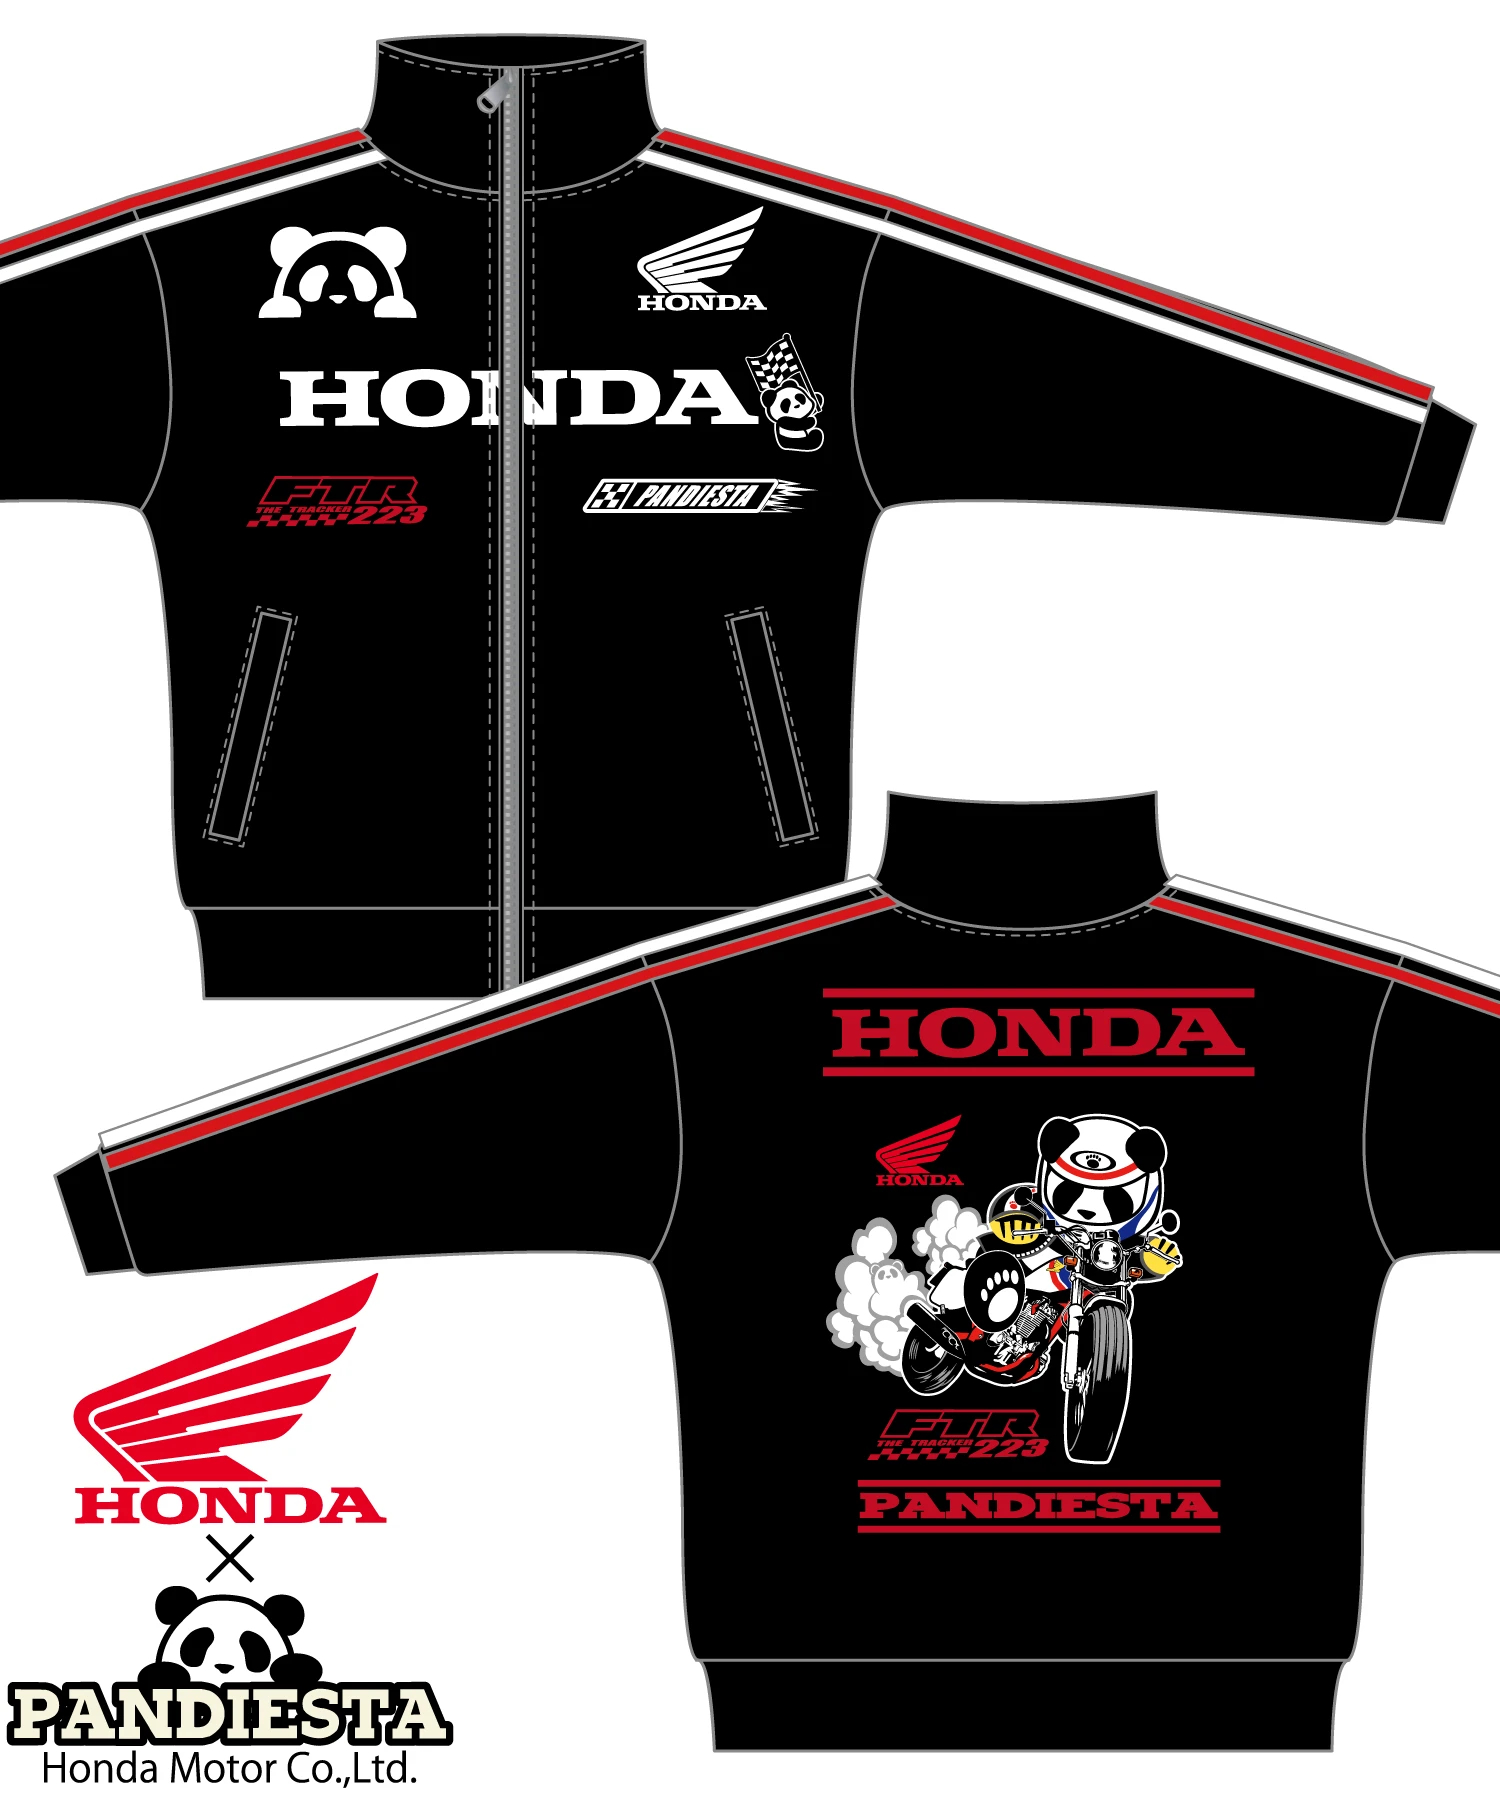 SB Honda×Pandiesta FTR223 ダートトラックジャージ コラボ企画(533507